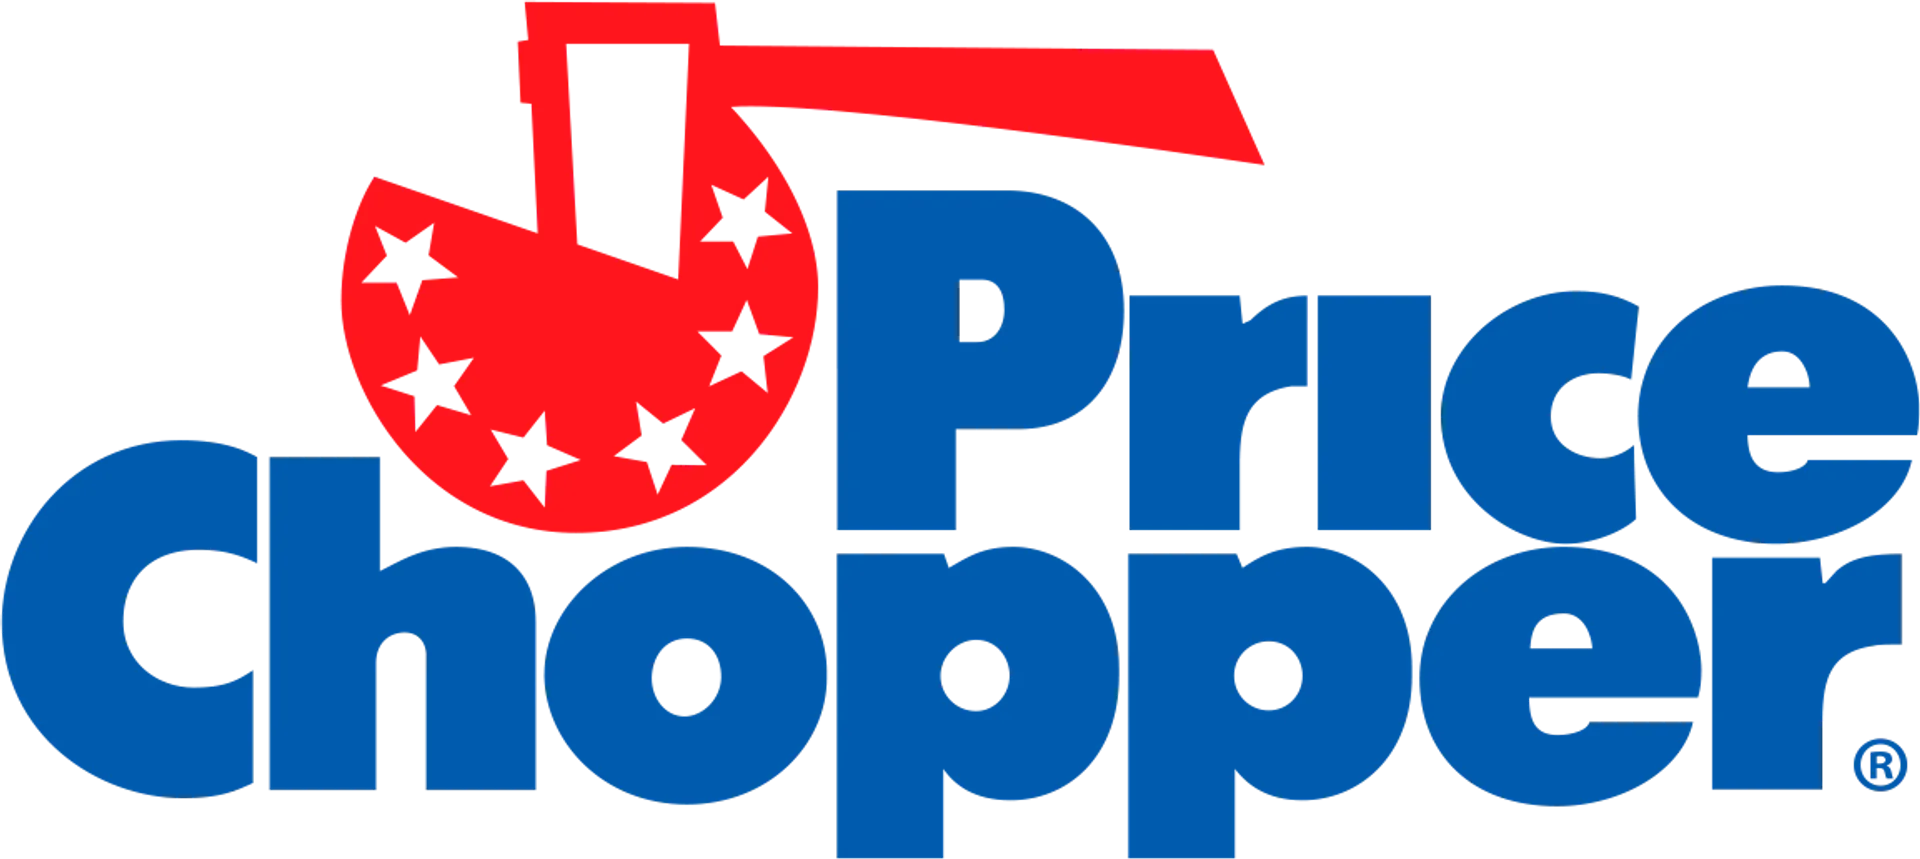 PRICE CHOPPER logo de catálogo